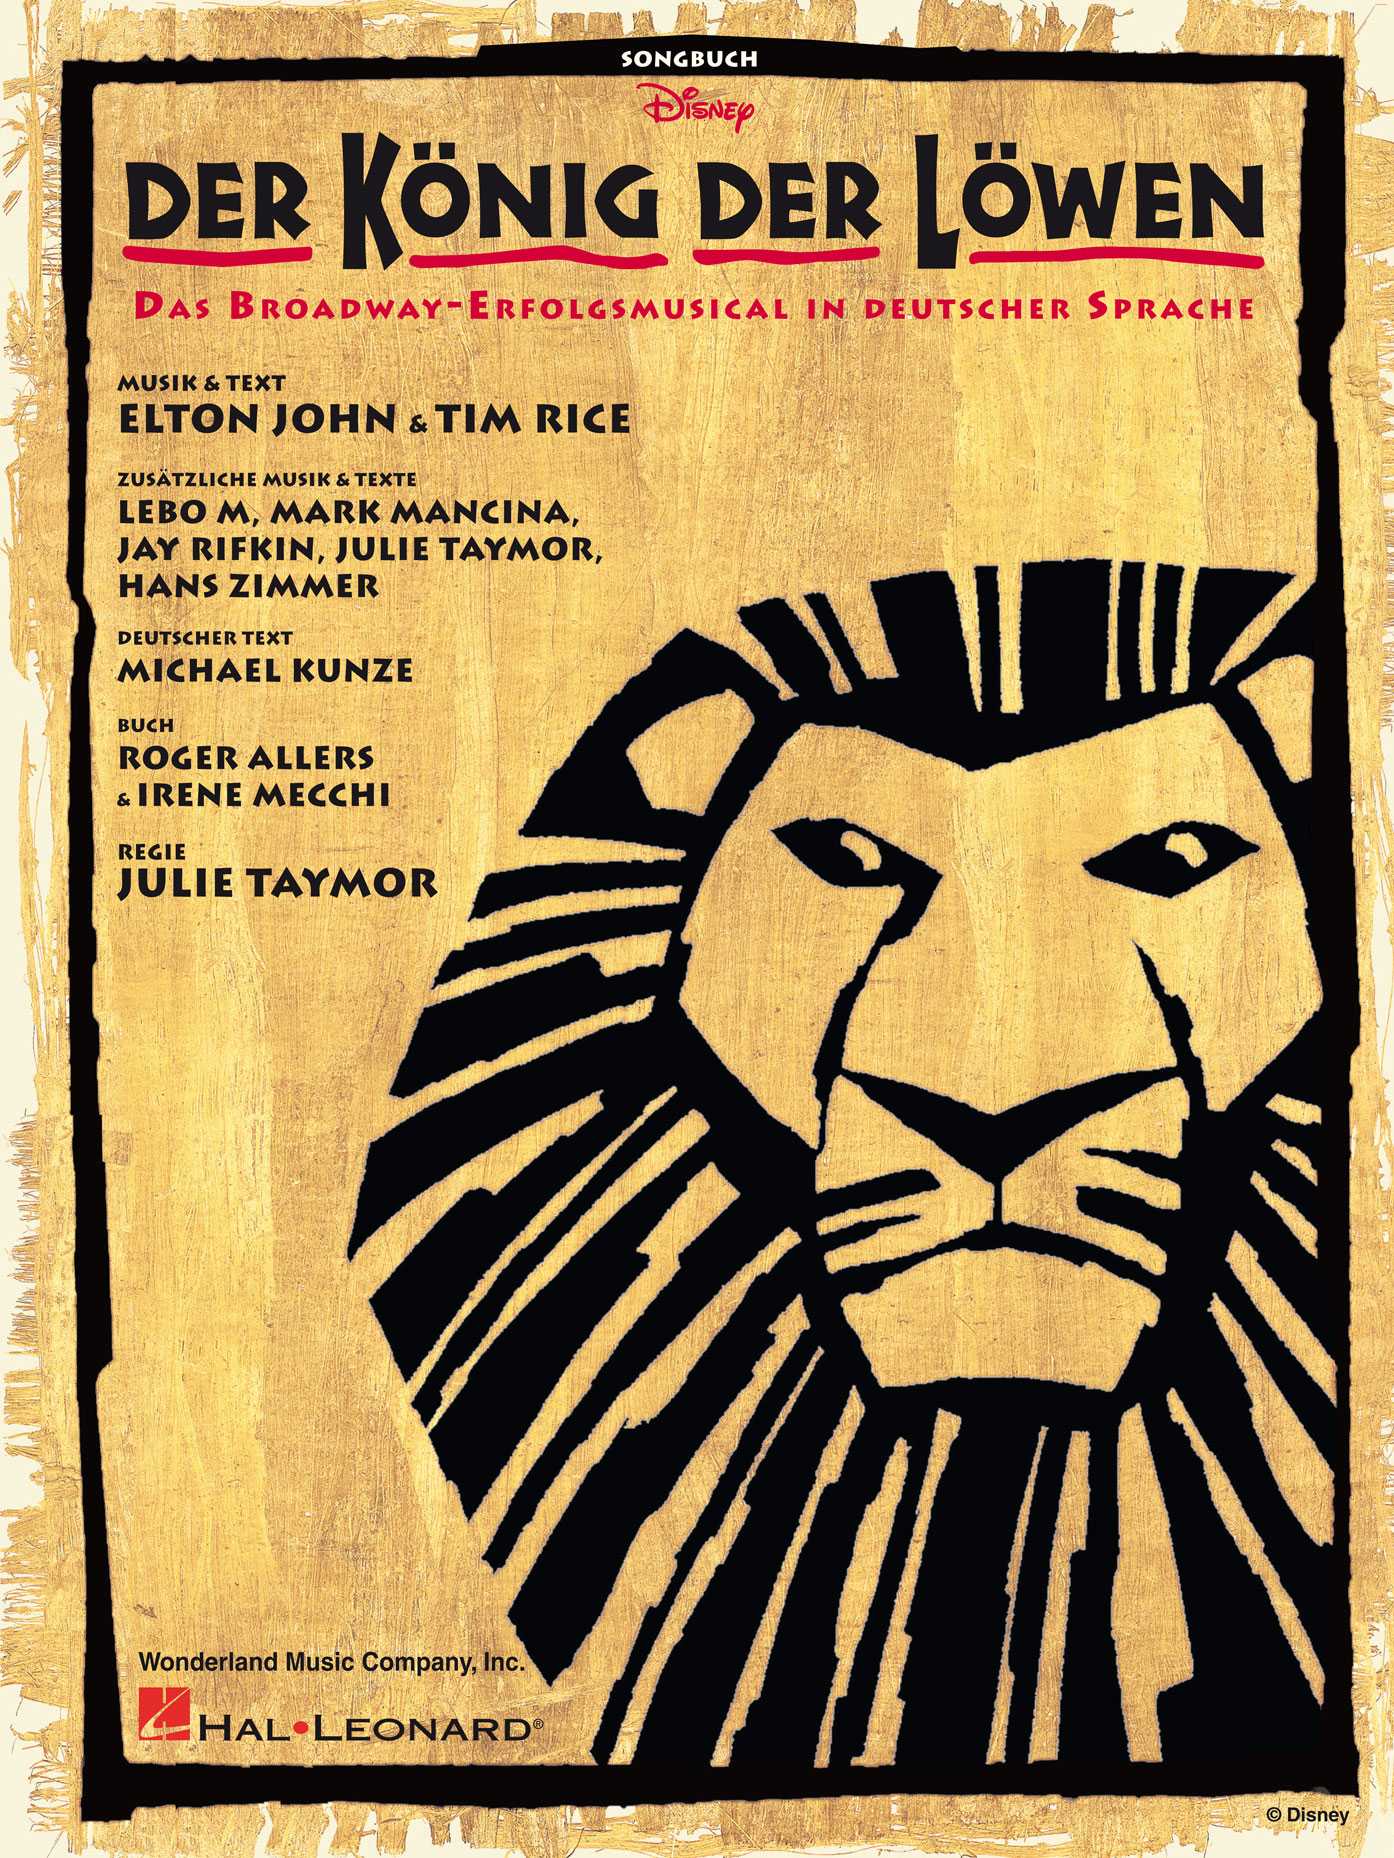 Der König der Löwen Songbuch - Das Broadway - Erfolgsmusical in deutscher Sprache